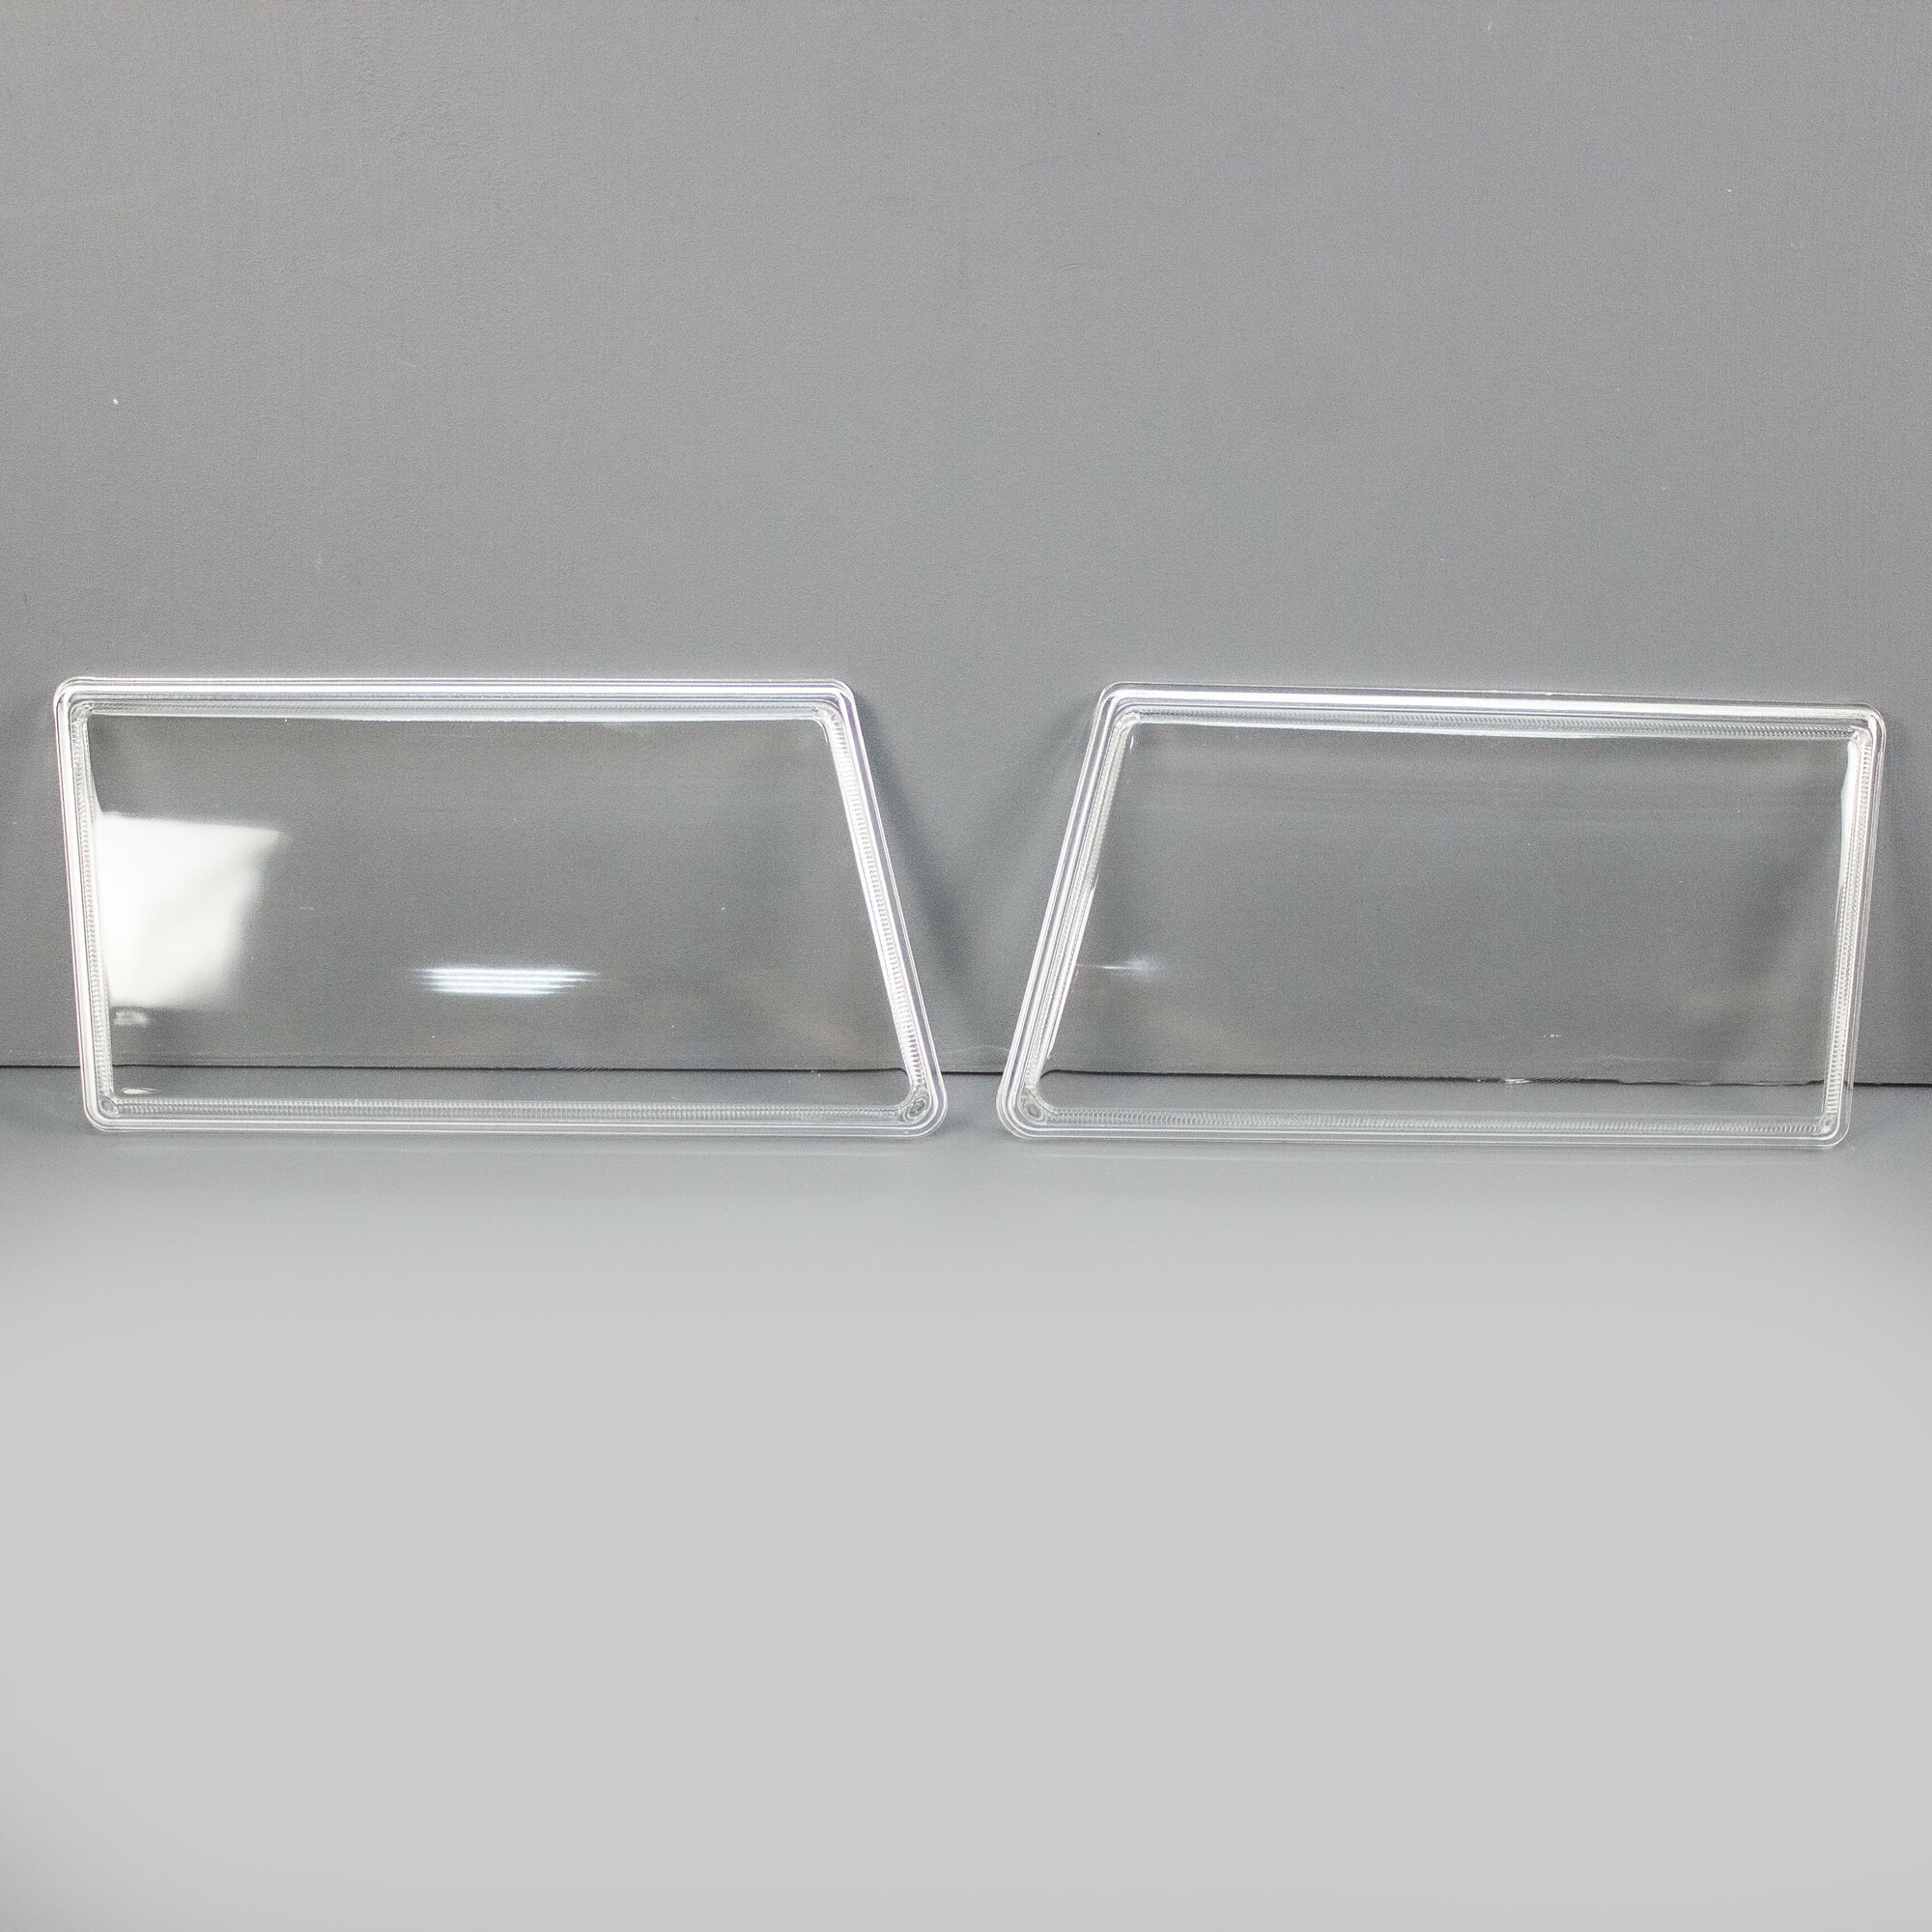 Гладкие стекла фар на ВАЗ 2108, 2109, 21099 (стекло) (лев, прав.)